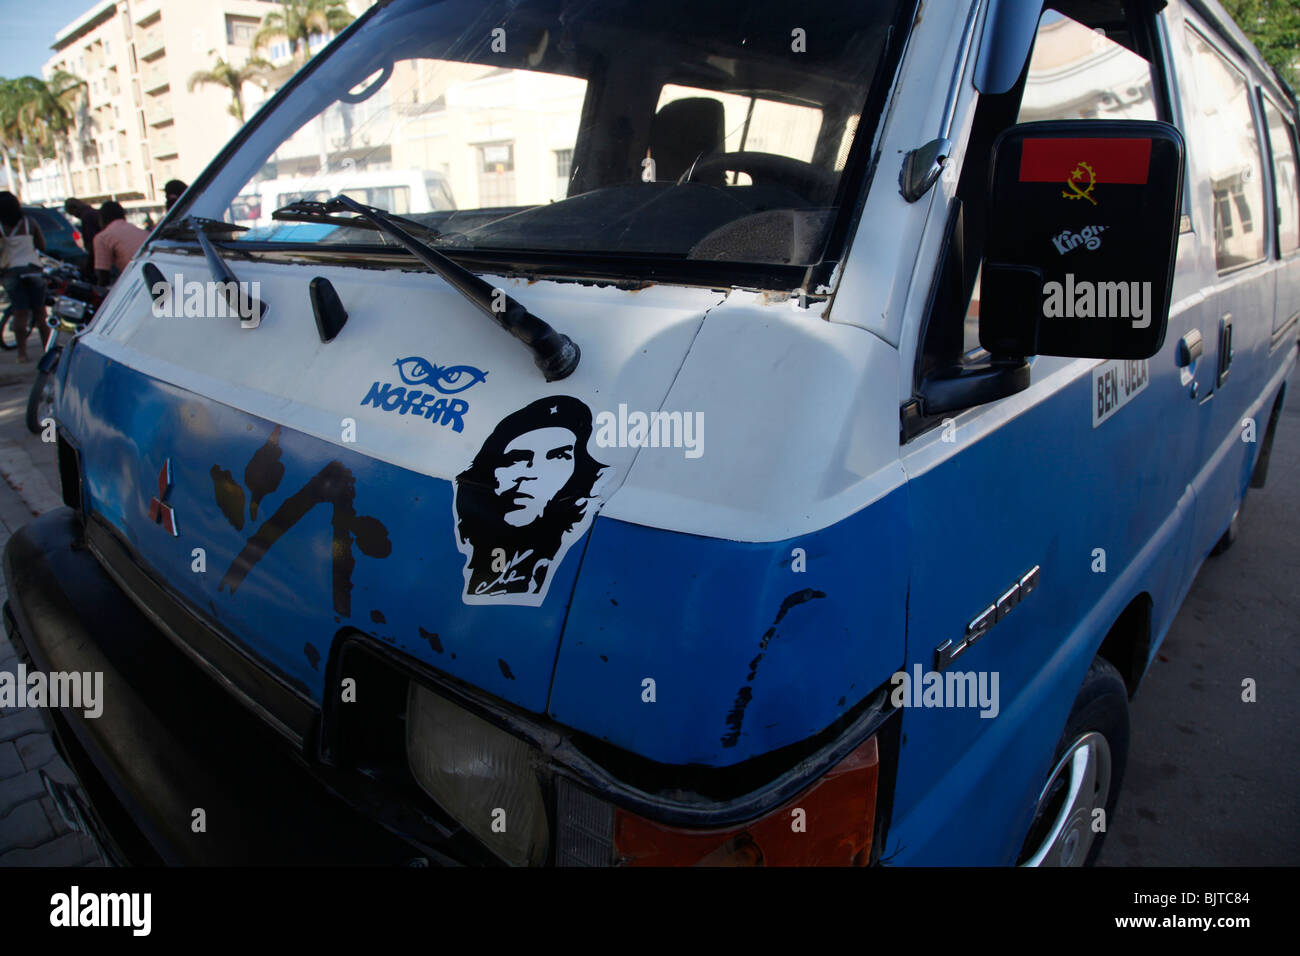 Ein Minibus-Taxi mit einem Aufkleber von der kubanischen Revolutionär Che Guevara und einen Aufkleber von der angolanischen Flagge. Benguela, Angola. Afrika Stockfoto